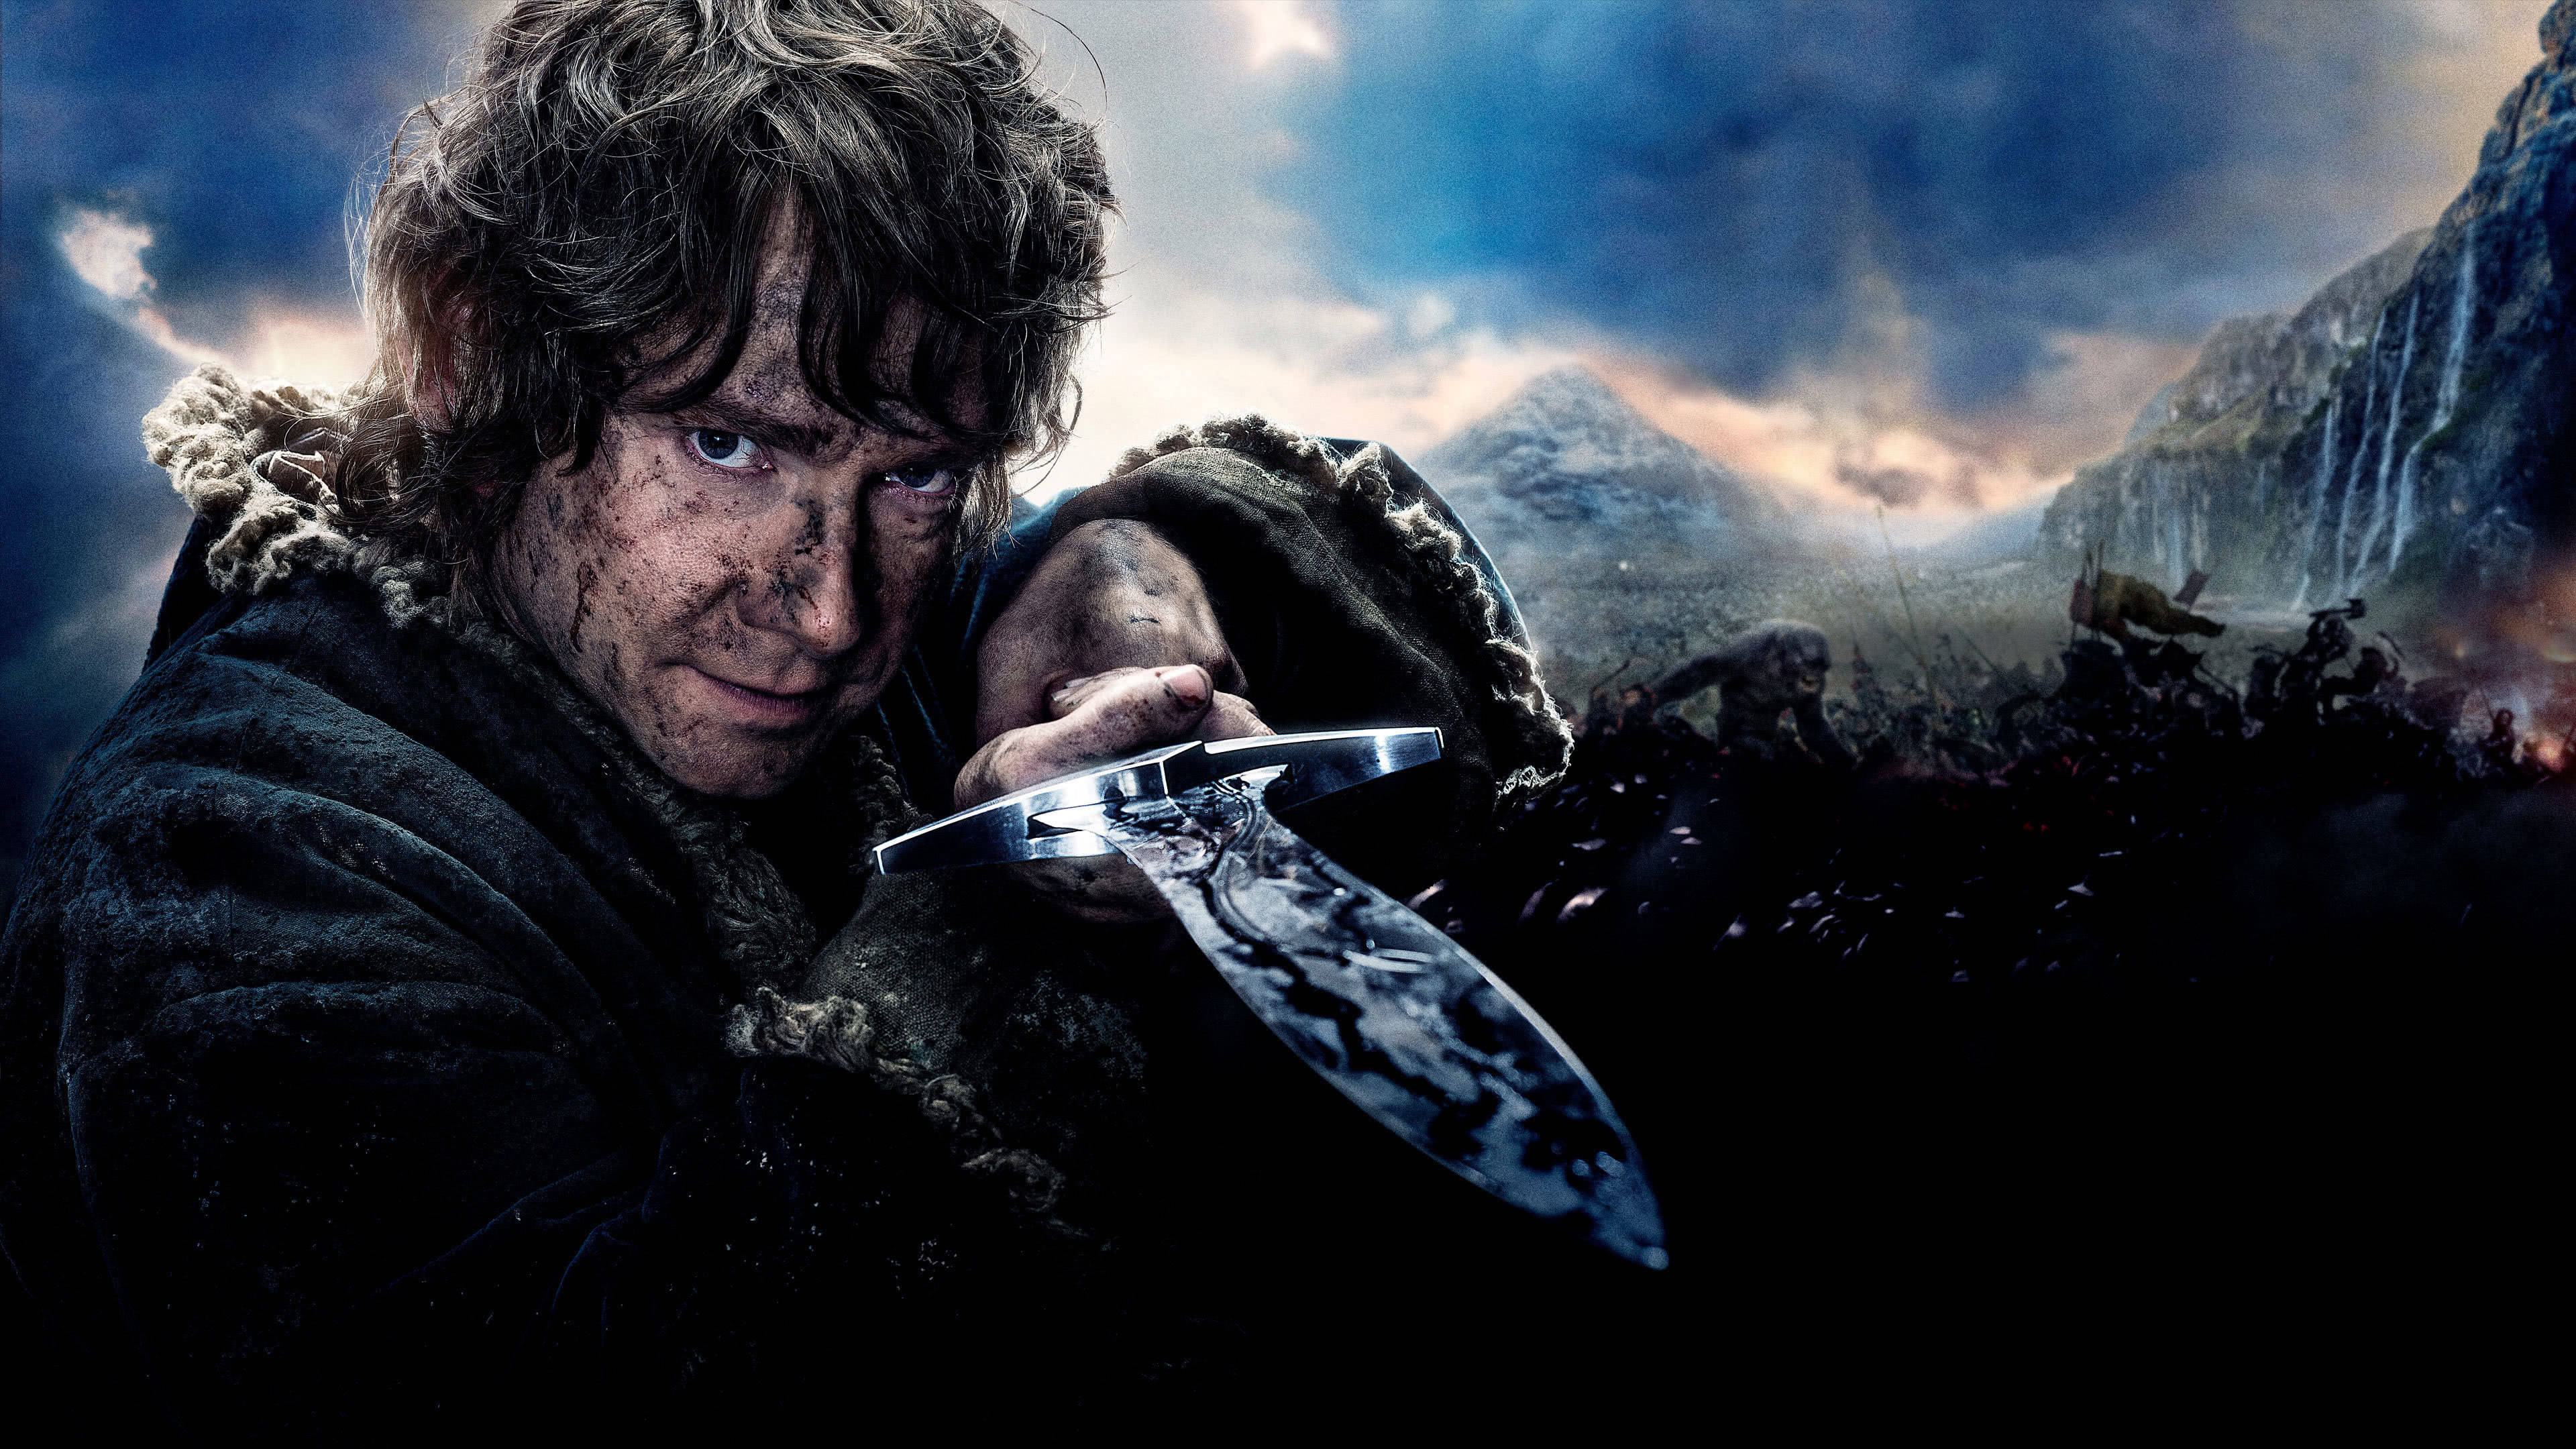 Bilbo Baggins character, Sting sword wallpaper, UHD 4K image, Adventurous hero, 3840x2160 4K Desktop